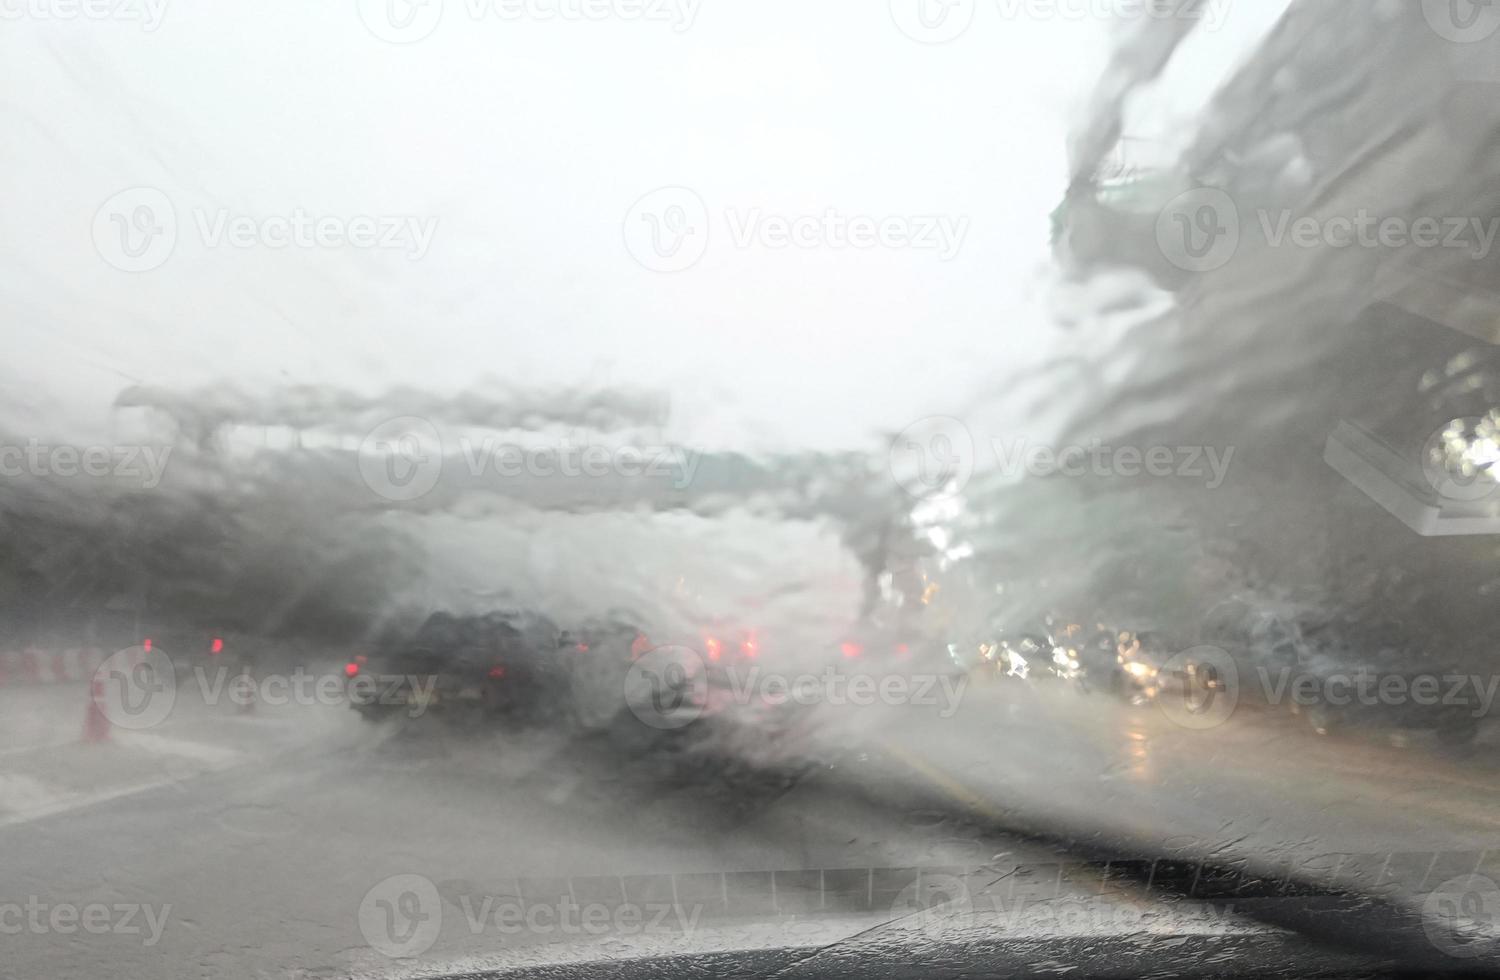 wegzicht door autoraam met zware regen en stormhits rijden in de regen, verkeerszicht vanaf de voorruit van de auto in de regen, rijden in de regen foto